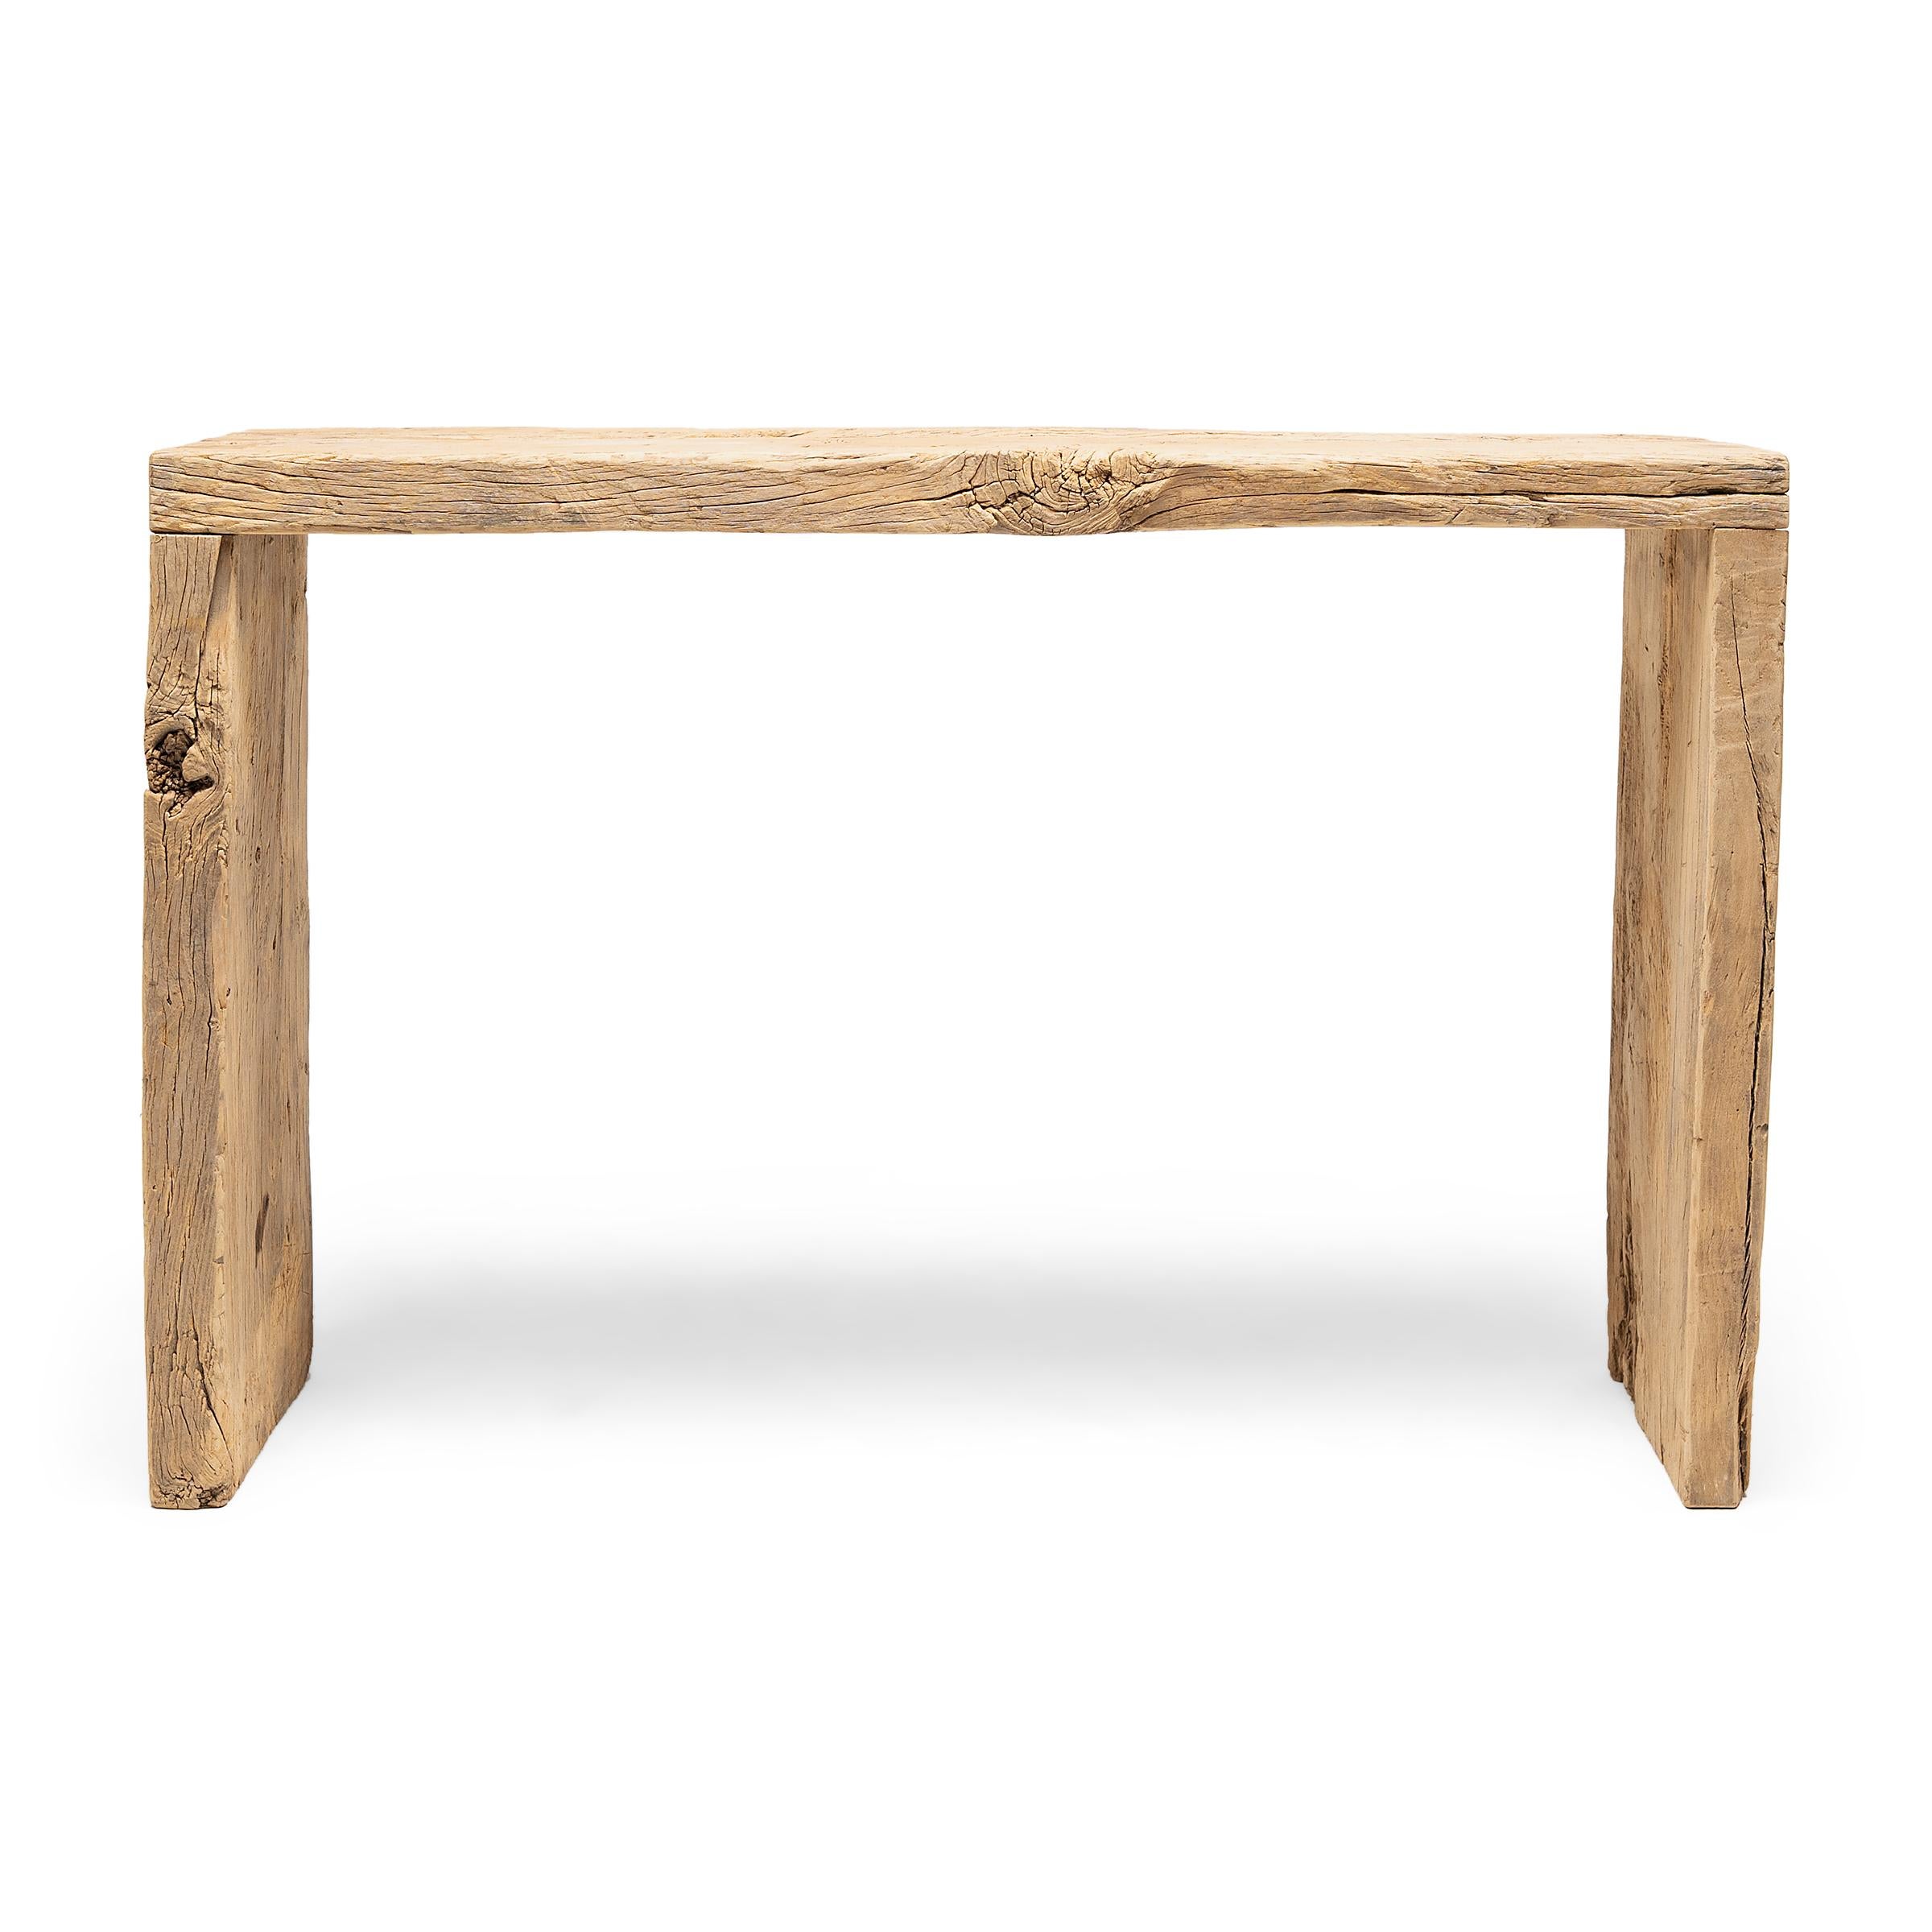 Dieser moderne Konsolentisch zelebriert den Wabi-Sabi-Stil. Der Tisch ist aus Holz gefertigt, das aus der Architektur der Qing-Dynastie stammt. Er hat ein minimalistisches Wasserfalldesign und ist unbearbeitet, um die natürliche Schönheit des